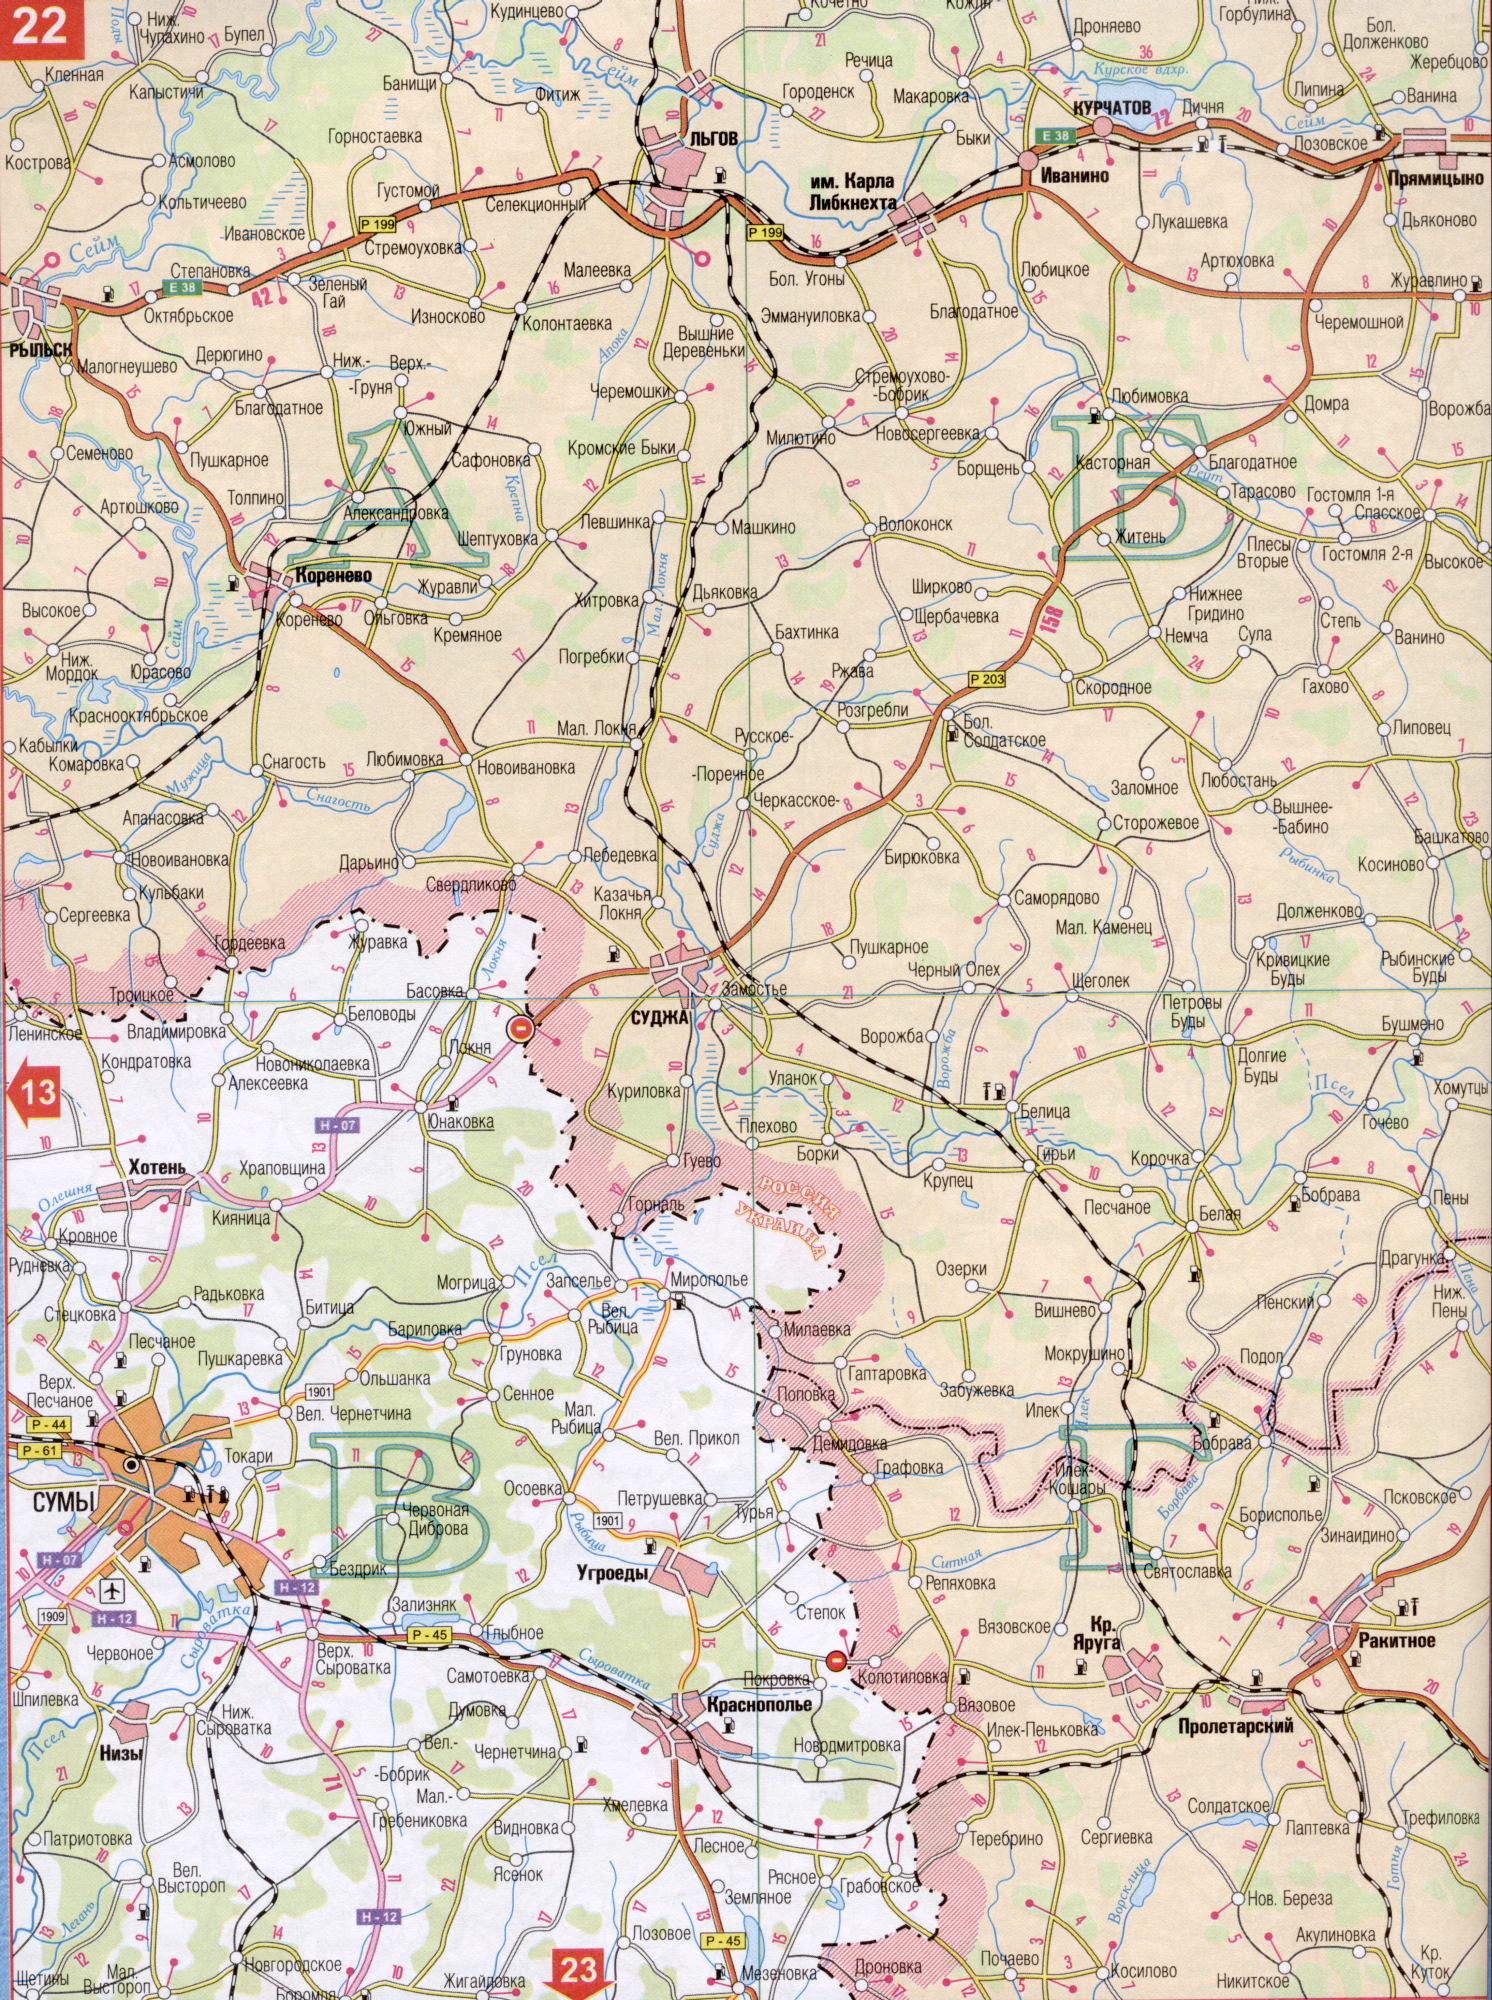 Карта Сумской области Украины (областной центр г.Сумы). Скачать бесплатно подробную карту автомобильных дорог, B0 - р.Ворожба,Псел,Реут